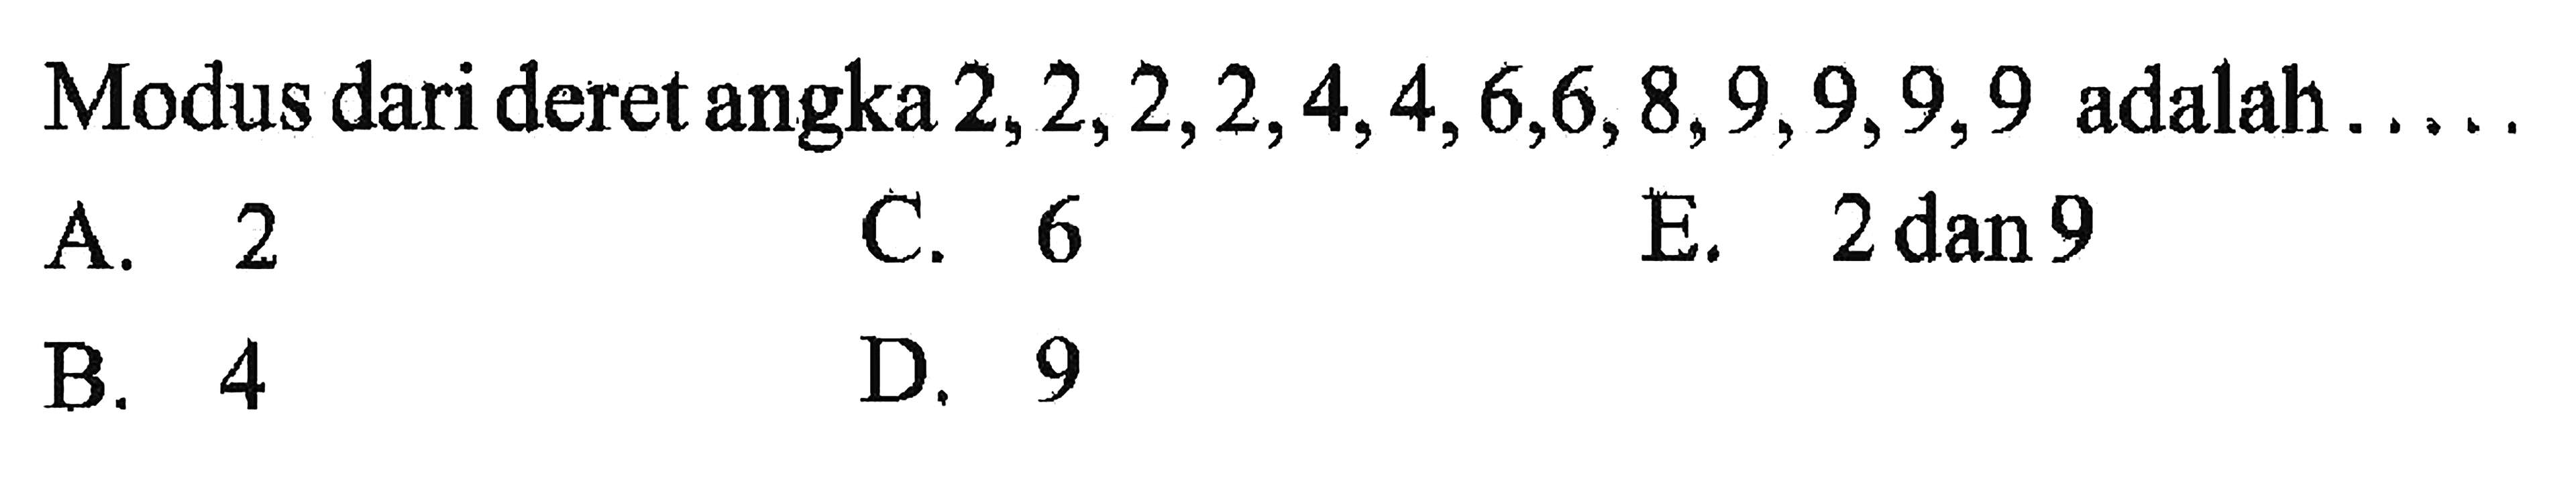 Modus dari deret angka 2,2,2,2,4,4,6,6,8,9,9,9 adalah ....